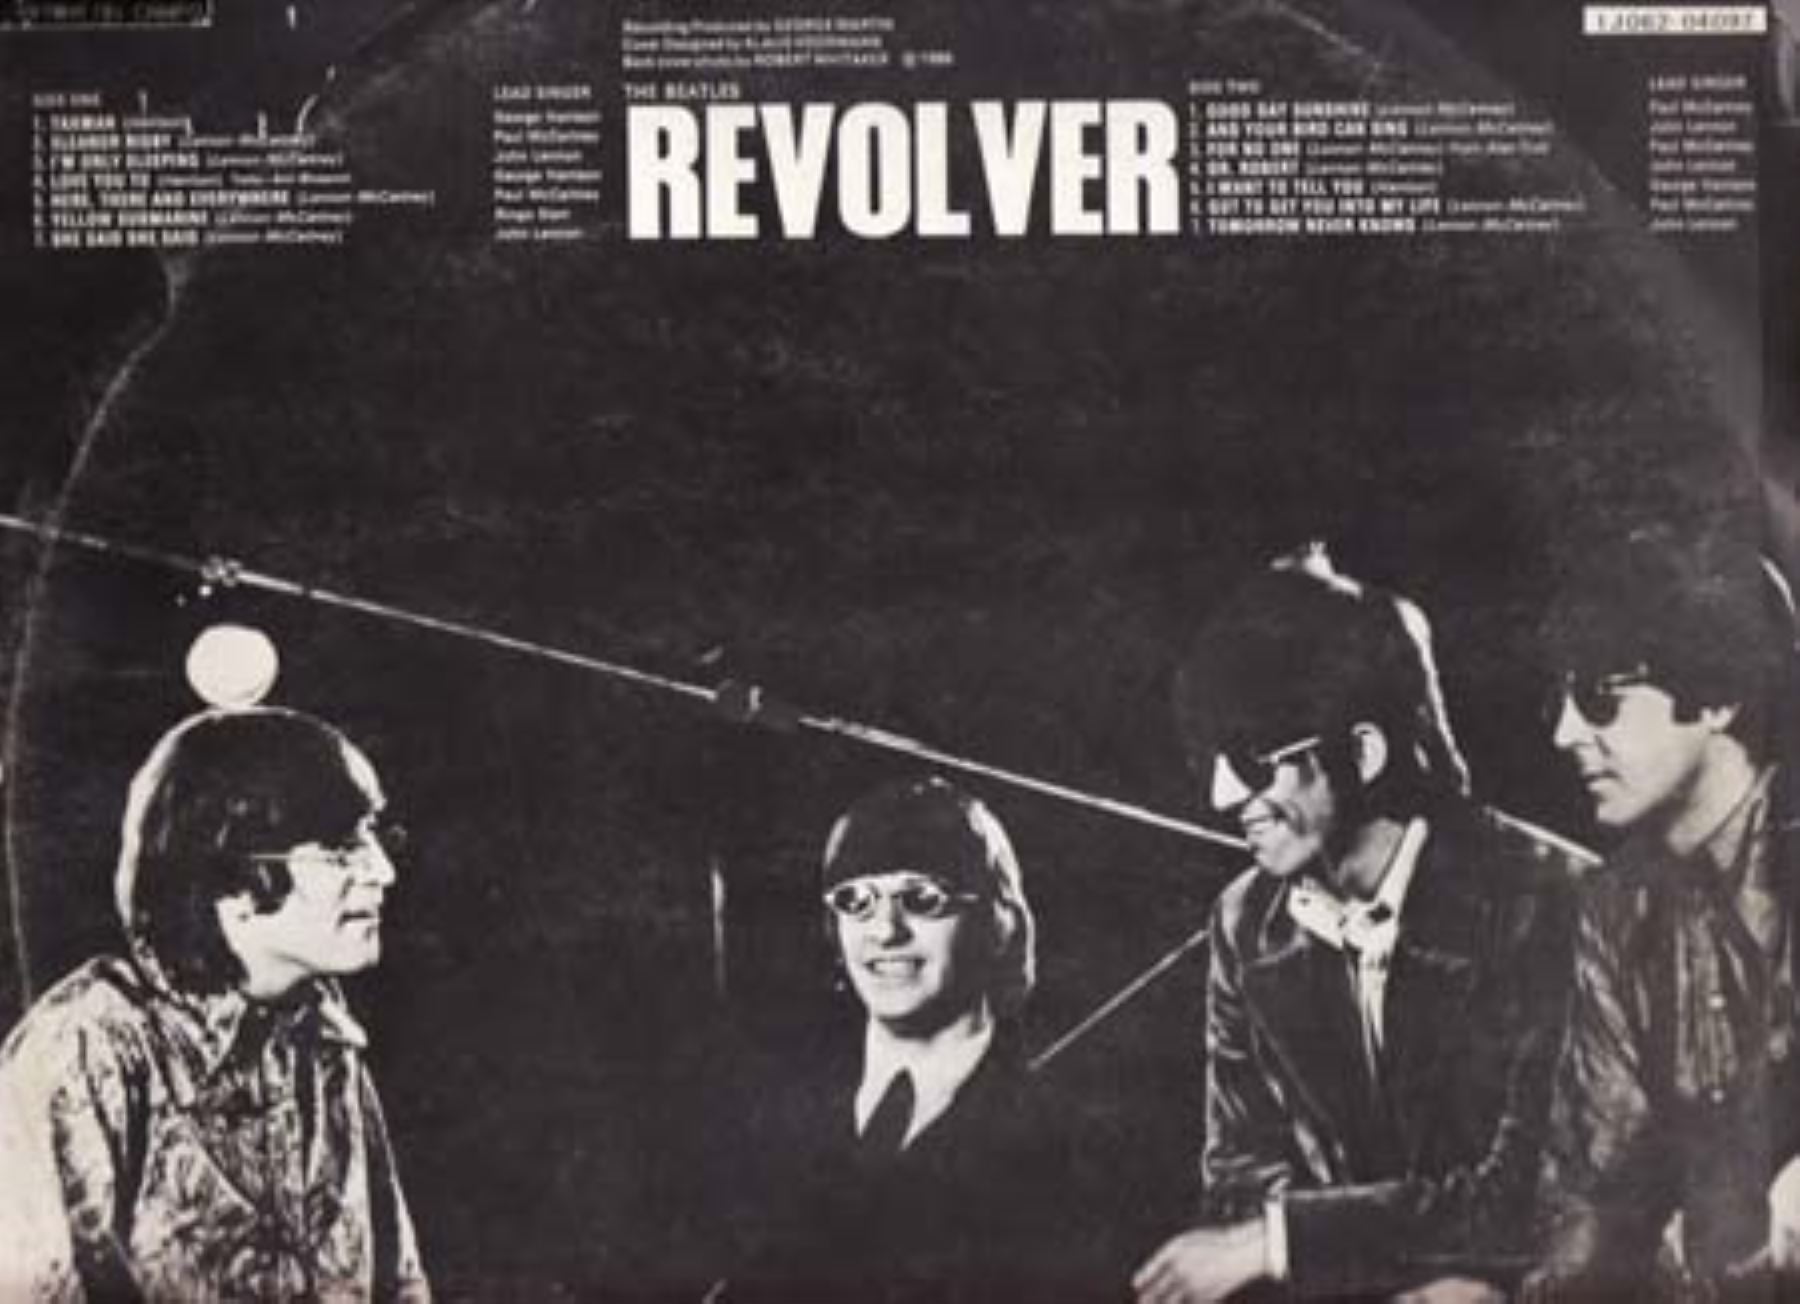 Le rinden tributo a The Beatlesa propósito de "Revólver".